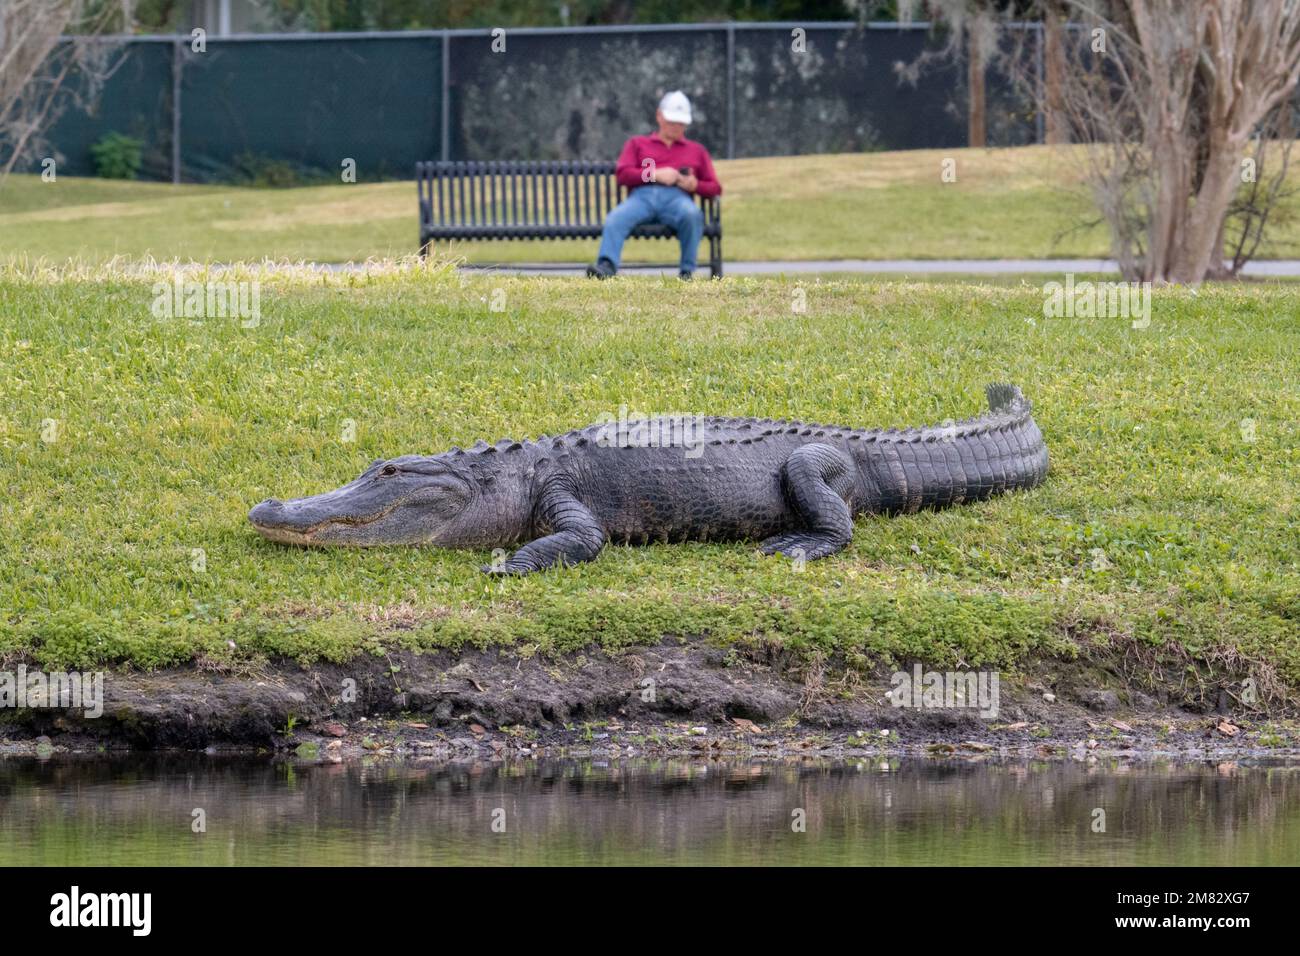 Ein großer amerikanischer Alligator entspannt sich im Dr. Bradford Memorial Park in Winter Garden, Florida, während ein Mann im Hintergrund gelegentlich mit seinem Handy spielt. Stockfoto